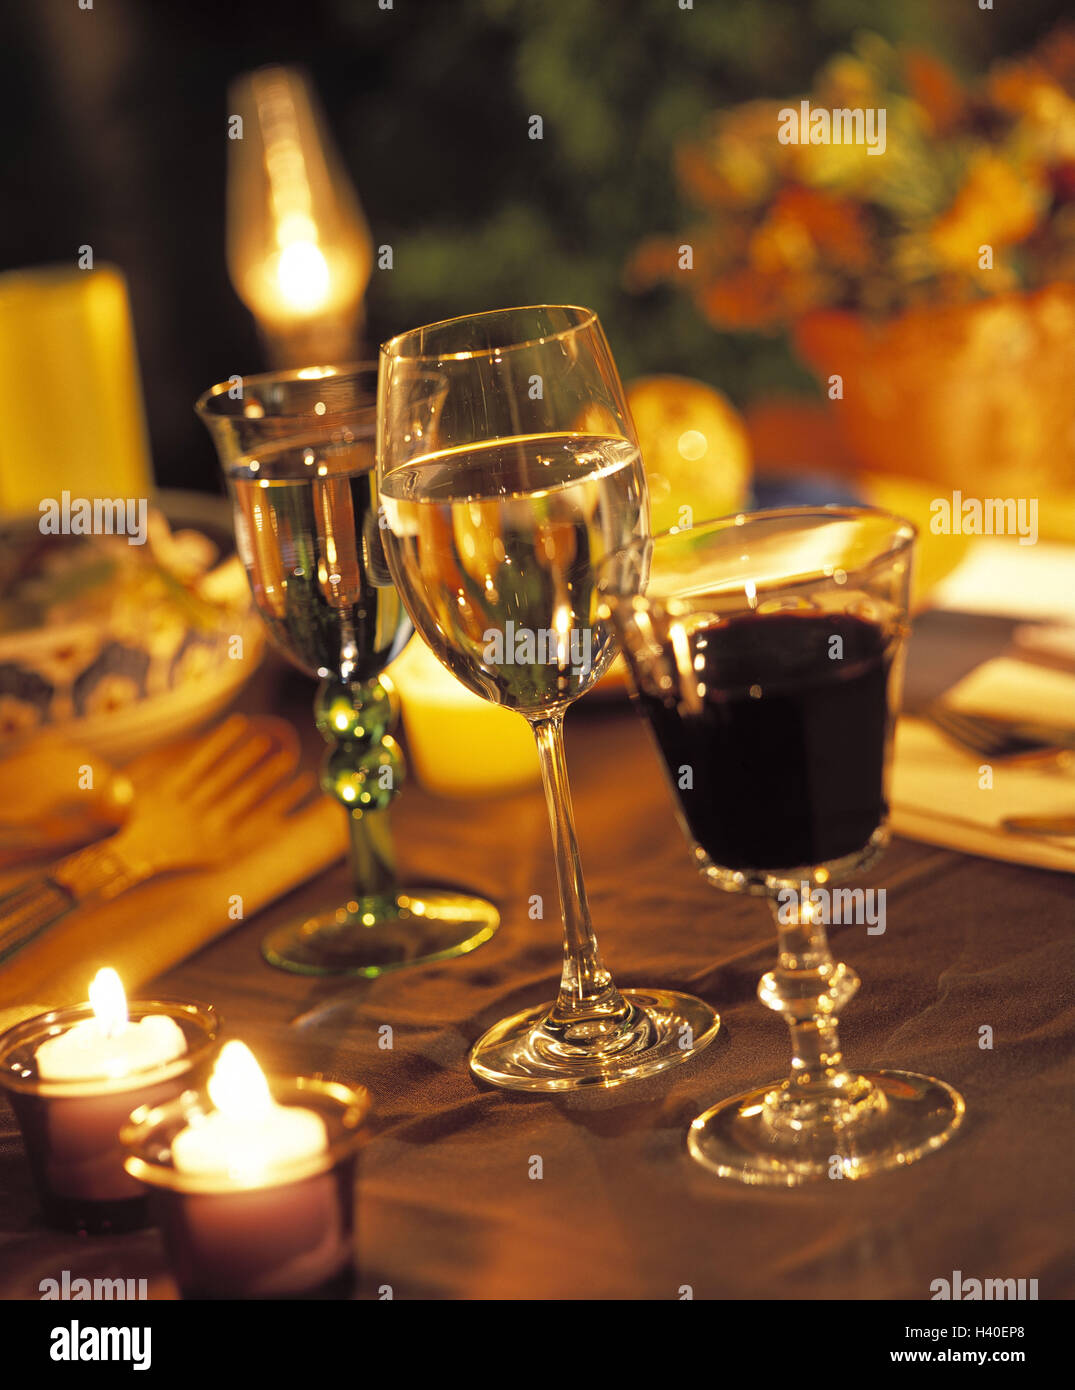 Dîner aux chandelles, table, couverts, à l'intérieur, la vie Toujours wineglasses, bougies, chandelles, verres, vin, rouge, blanc, vin rouge, vin blanc, d'une manière différente, romantisme, romantically Banque D'Images